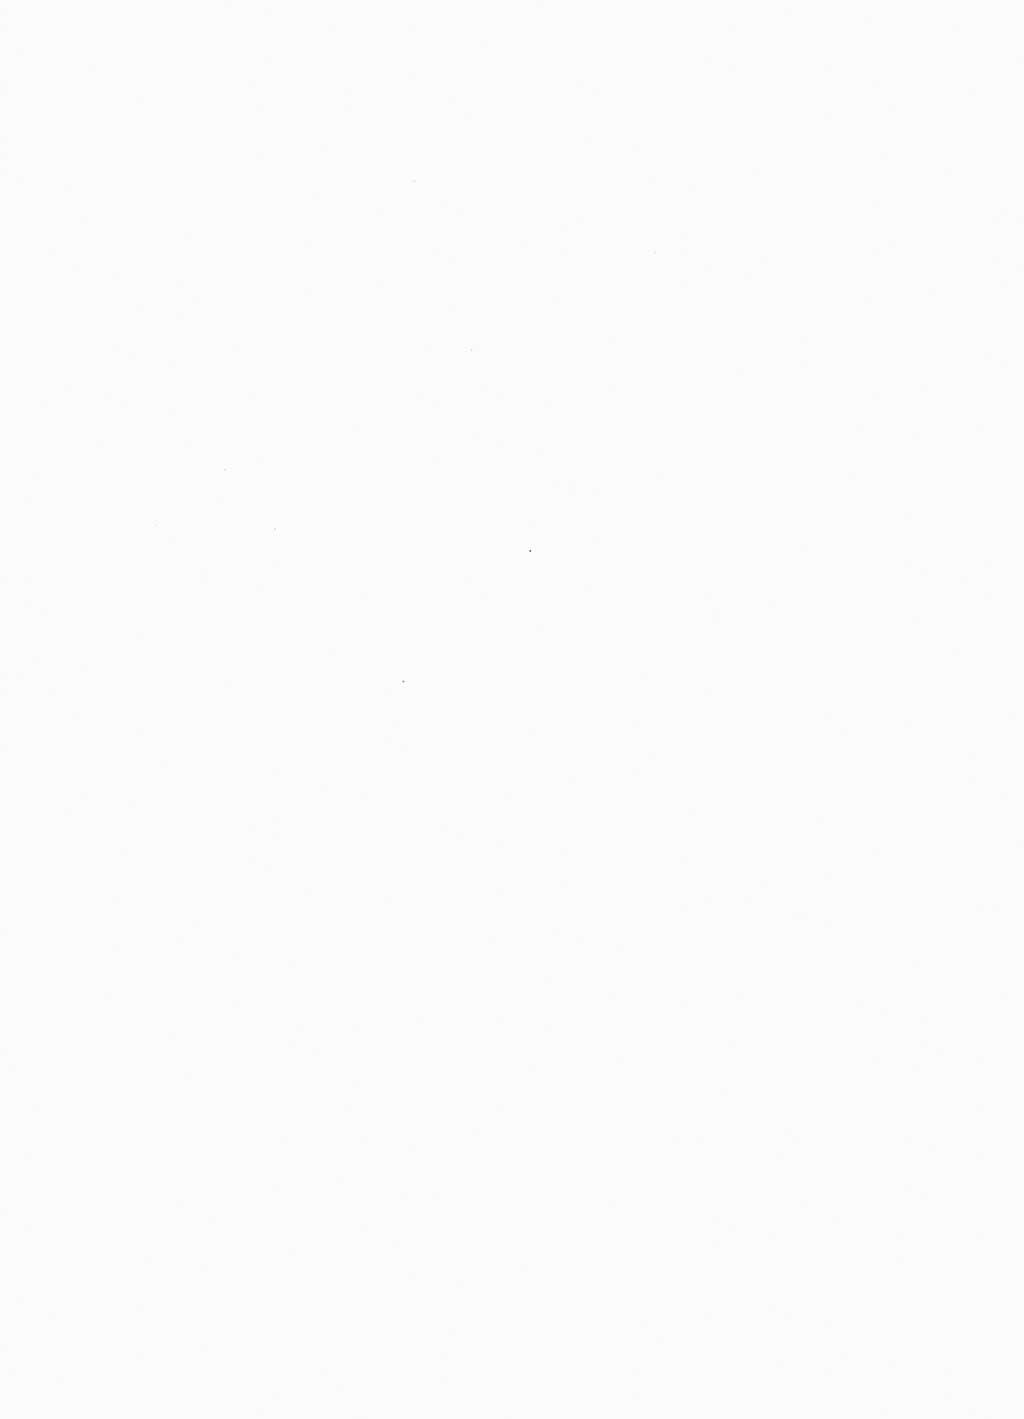 Protokoll der Verhandlungen des Ⅹ. Parteitages der Sozialistischen Einheitspartei Deutschlands (SED) [Deutsche Demokratische Republik (DDR)] 1981, Band 1, Seite 2 (Prot. Verh. Ⅹ. PT SED DDR 1981, Bd. 1, S. 2)